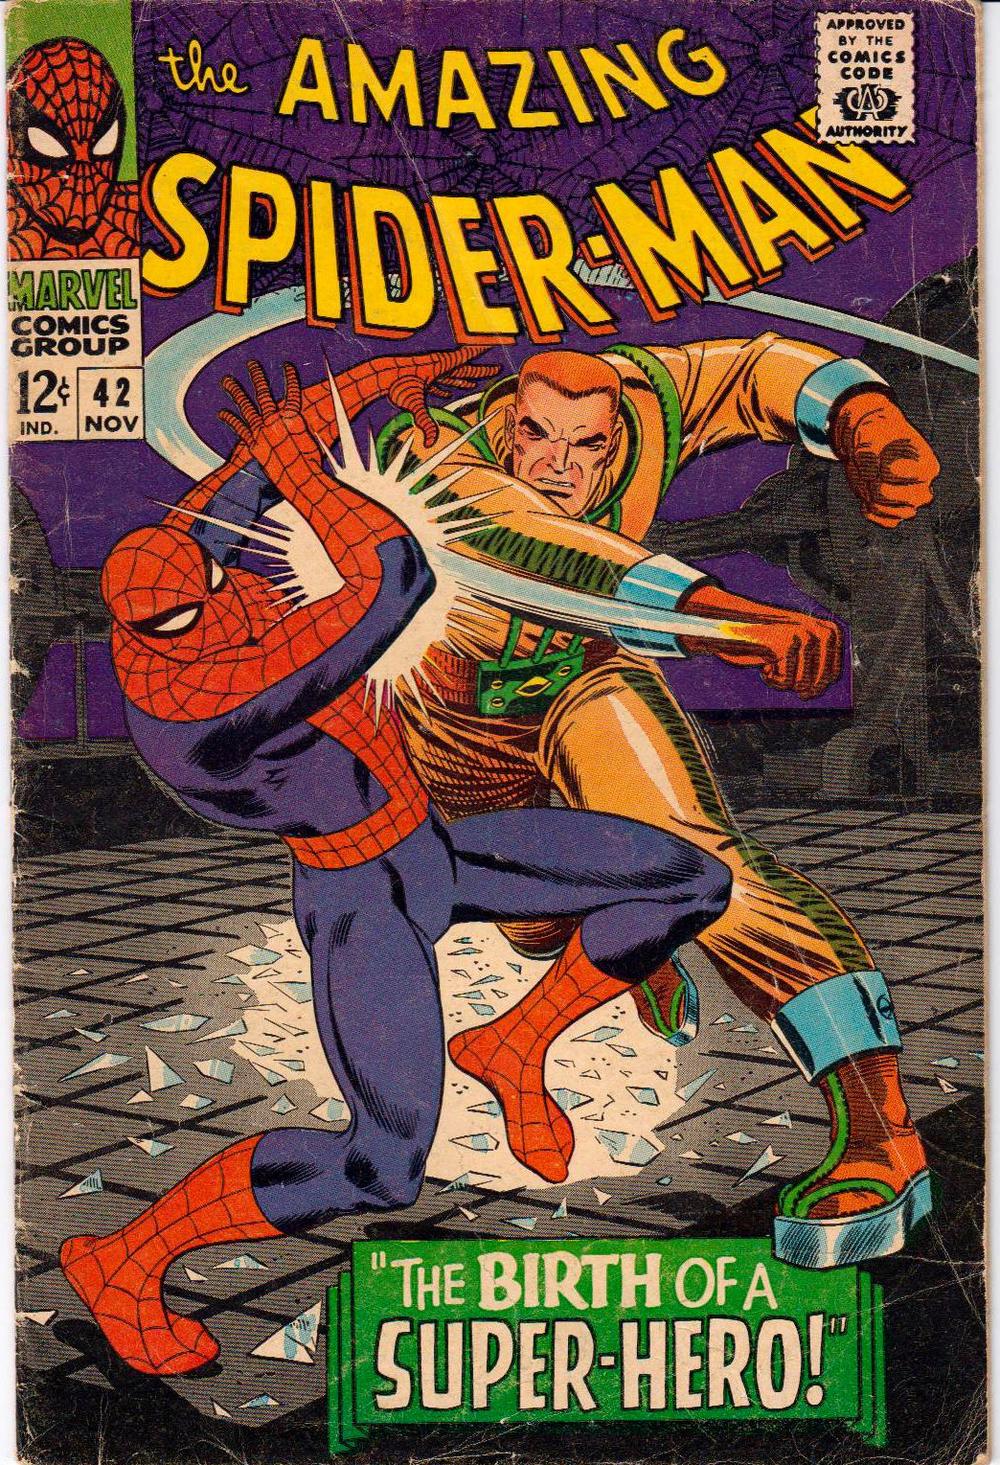 1966. KLASIK
Originalne boje Spajdermenovog kostima su bile crna i crvena, a pojedini delovi osenčeni plavim usled ograničenja koje je nametala štampa stripa. Kada je Džon Romita stariji preuzeo da crta ovog superheroja kostim je potpuno postao plav i crven, a paučinasta zakrilca su se izgubila iz crteža.